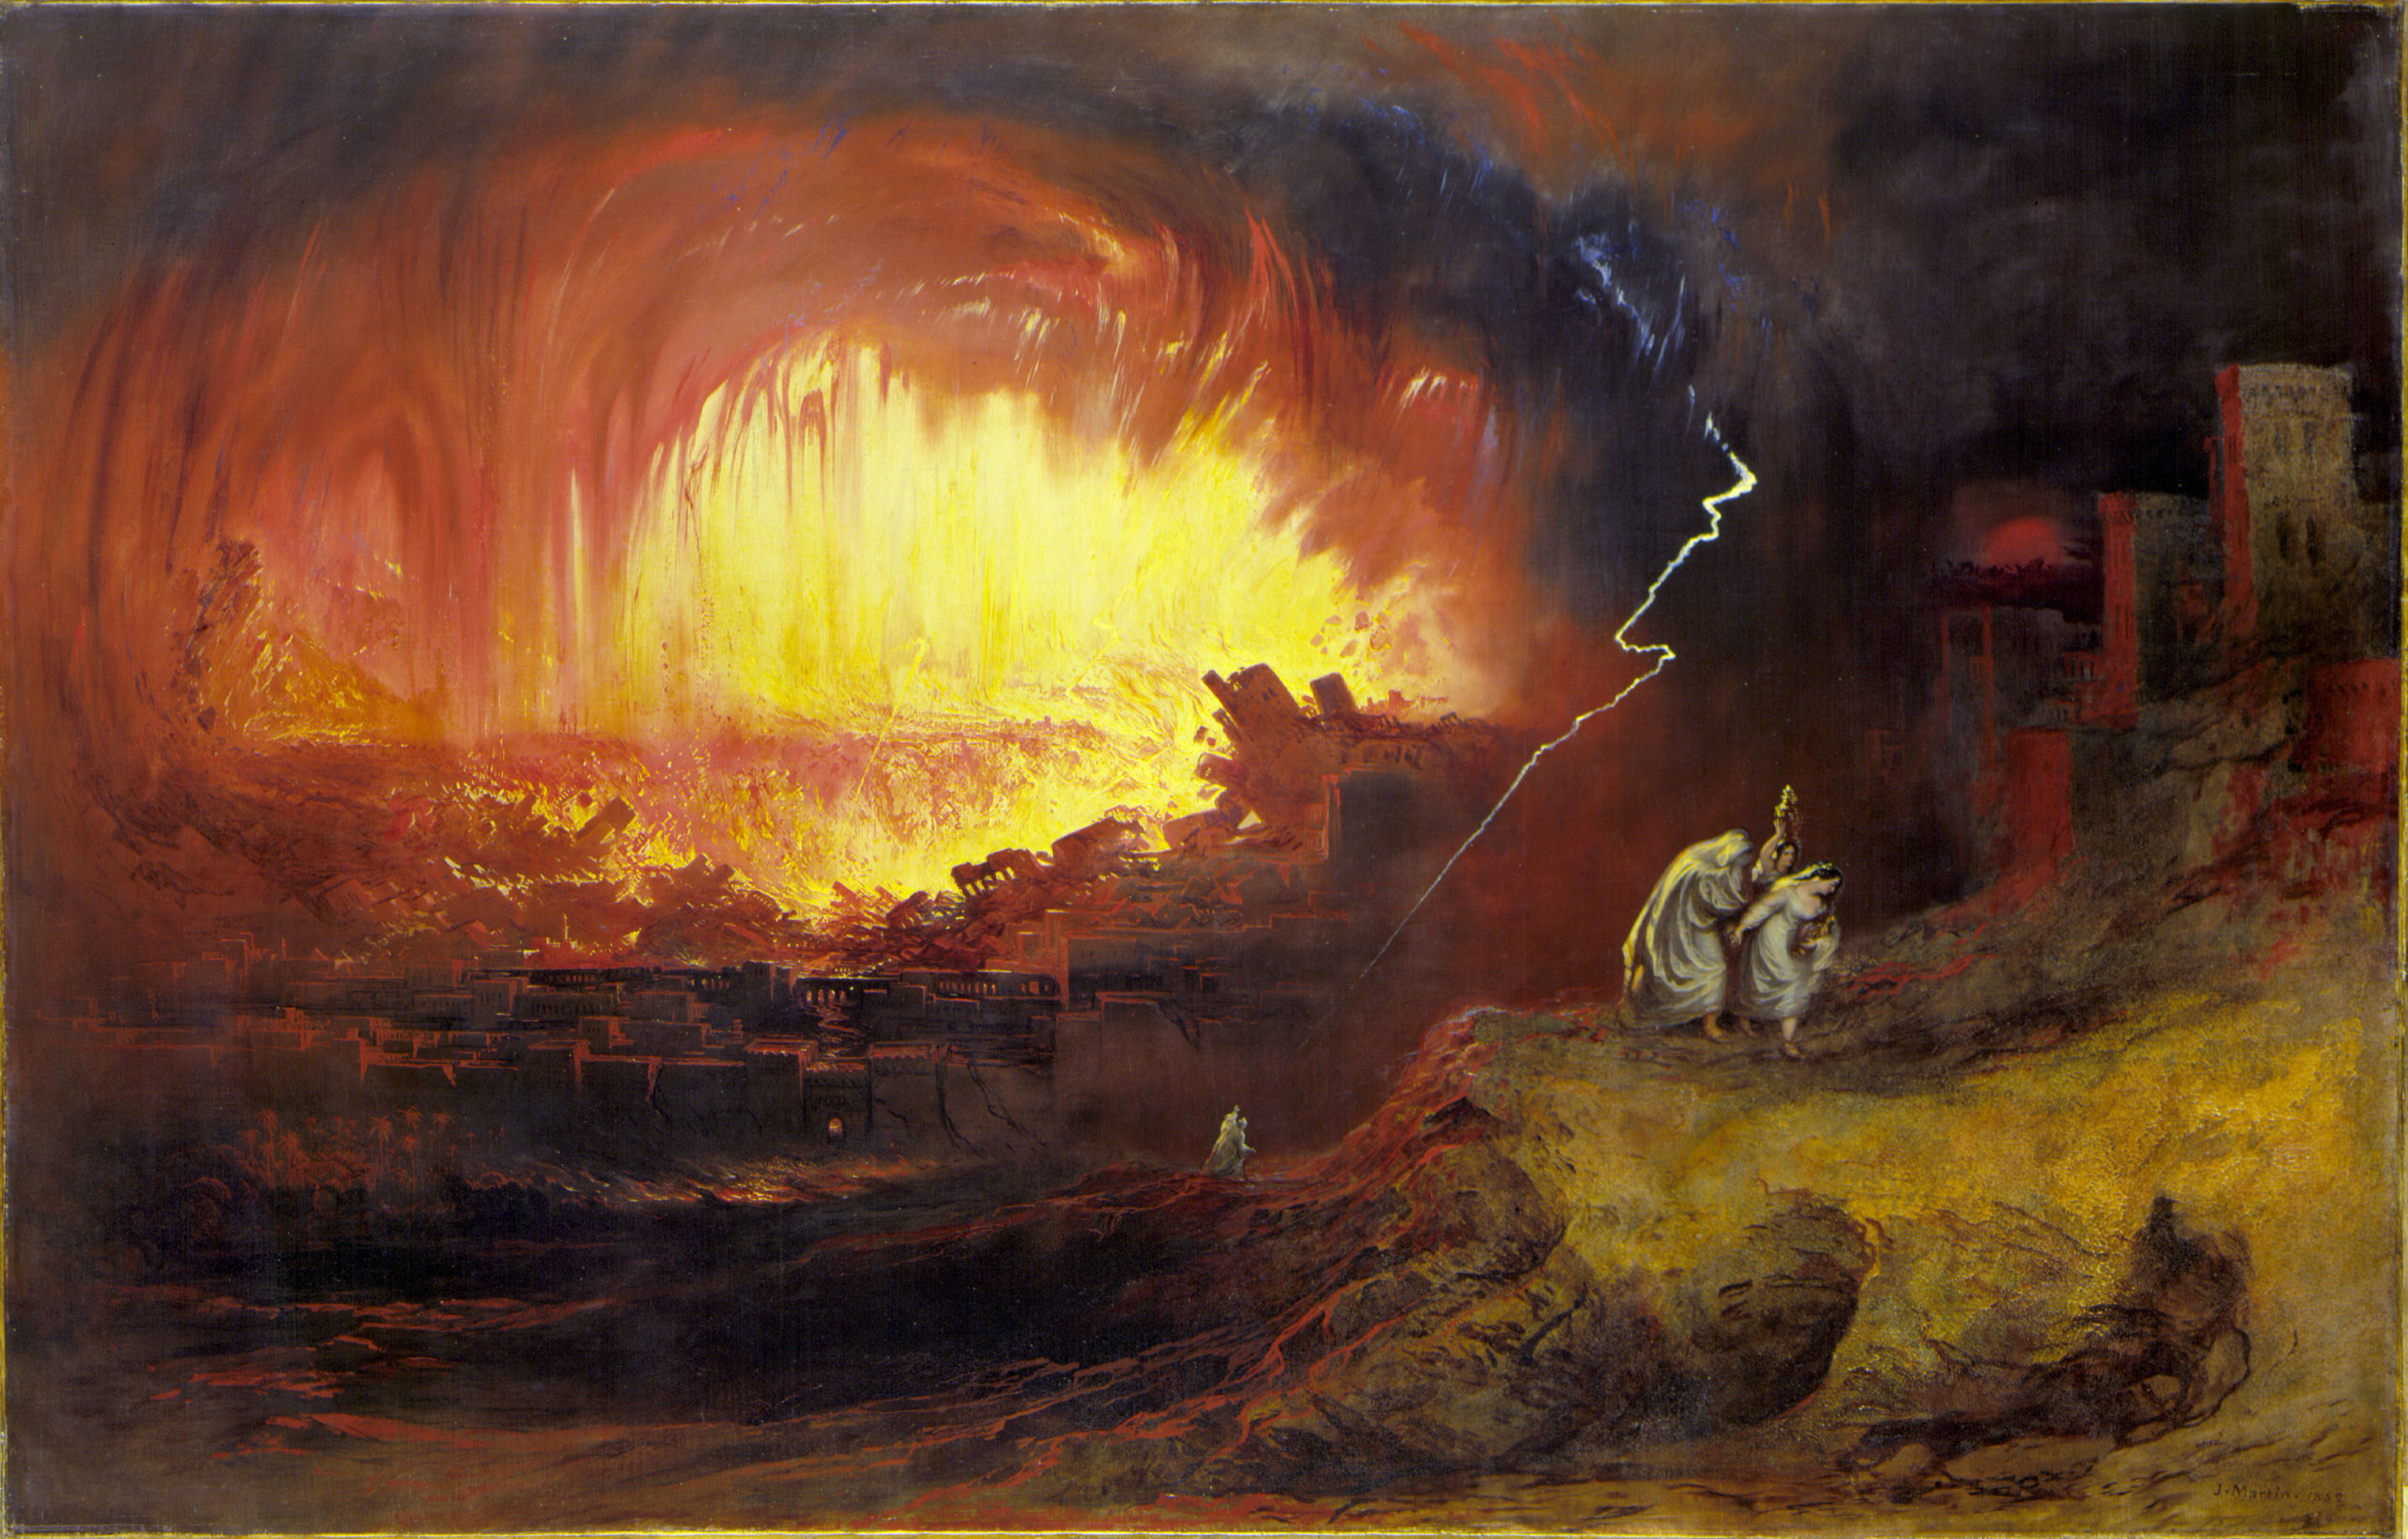 所多瑪與蛾摩拉的毀滅 by John Martin - 西元1852 - 136.3 x 212.3 公分 